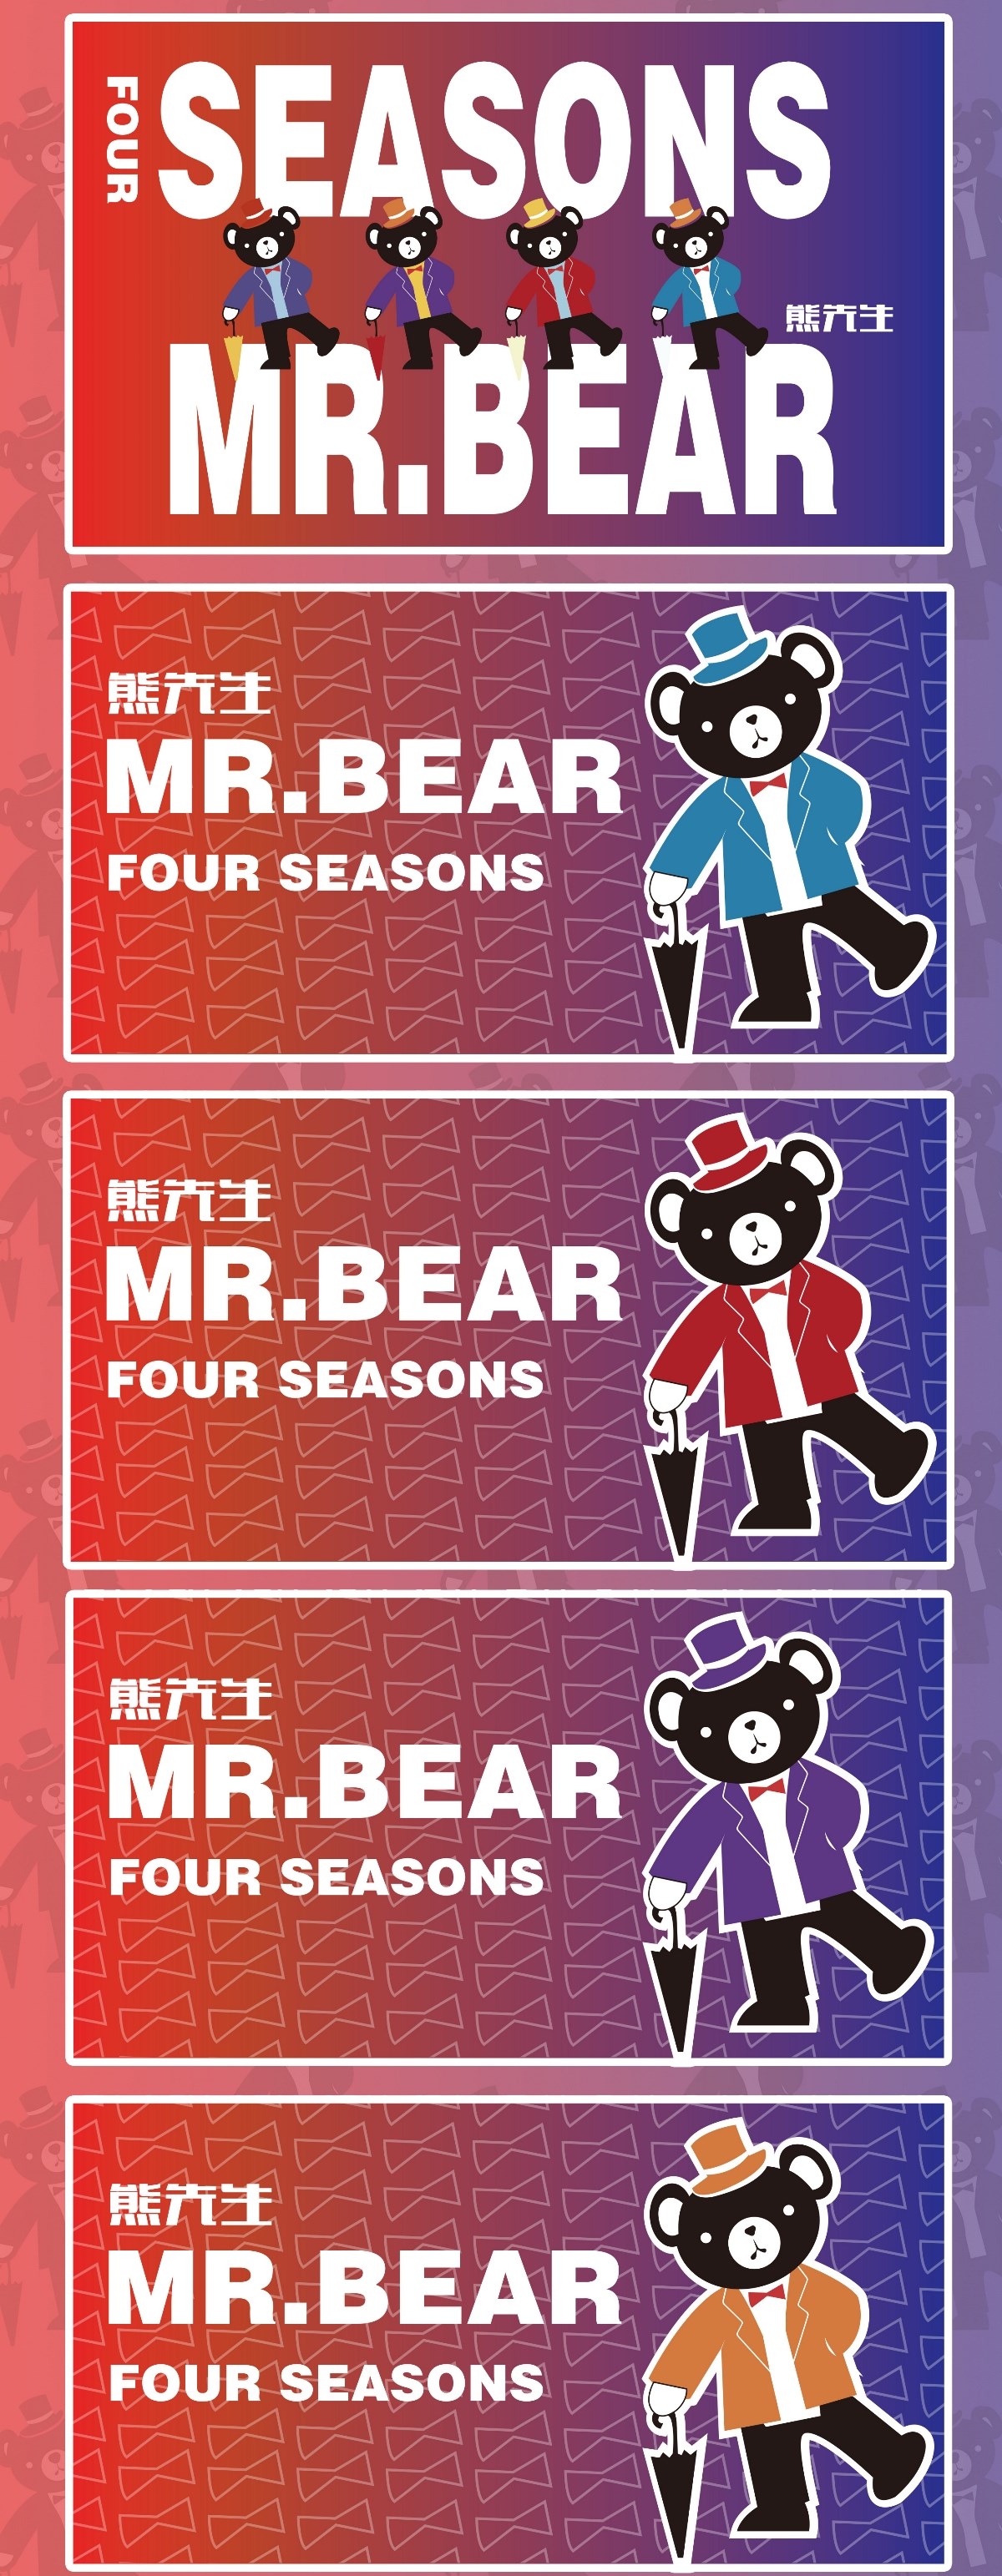 熊先生 MR.BEAR